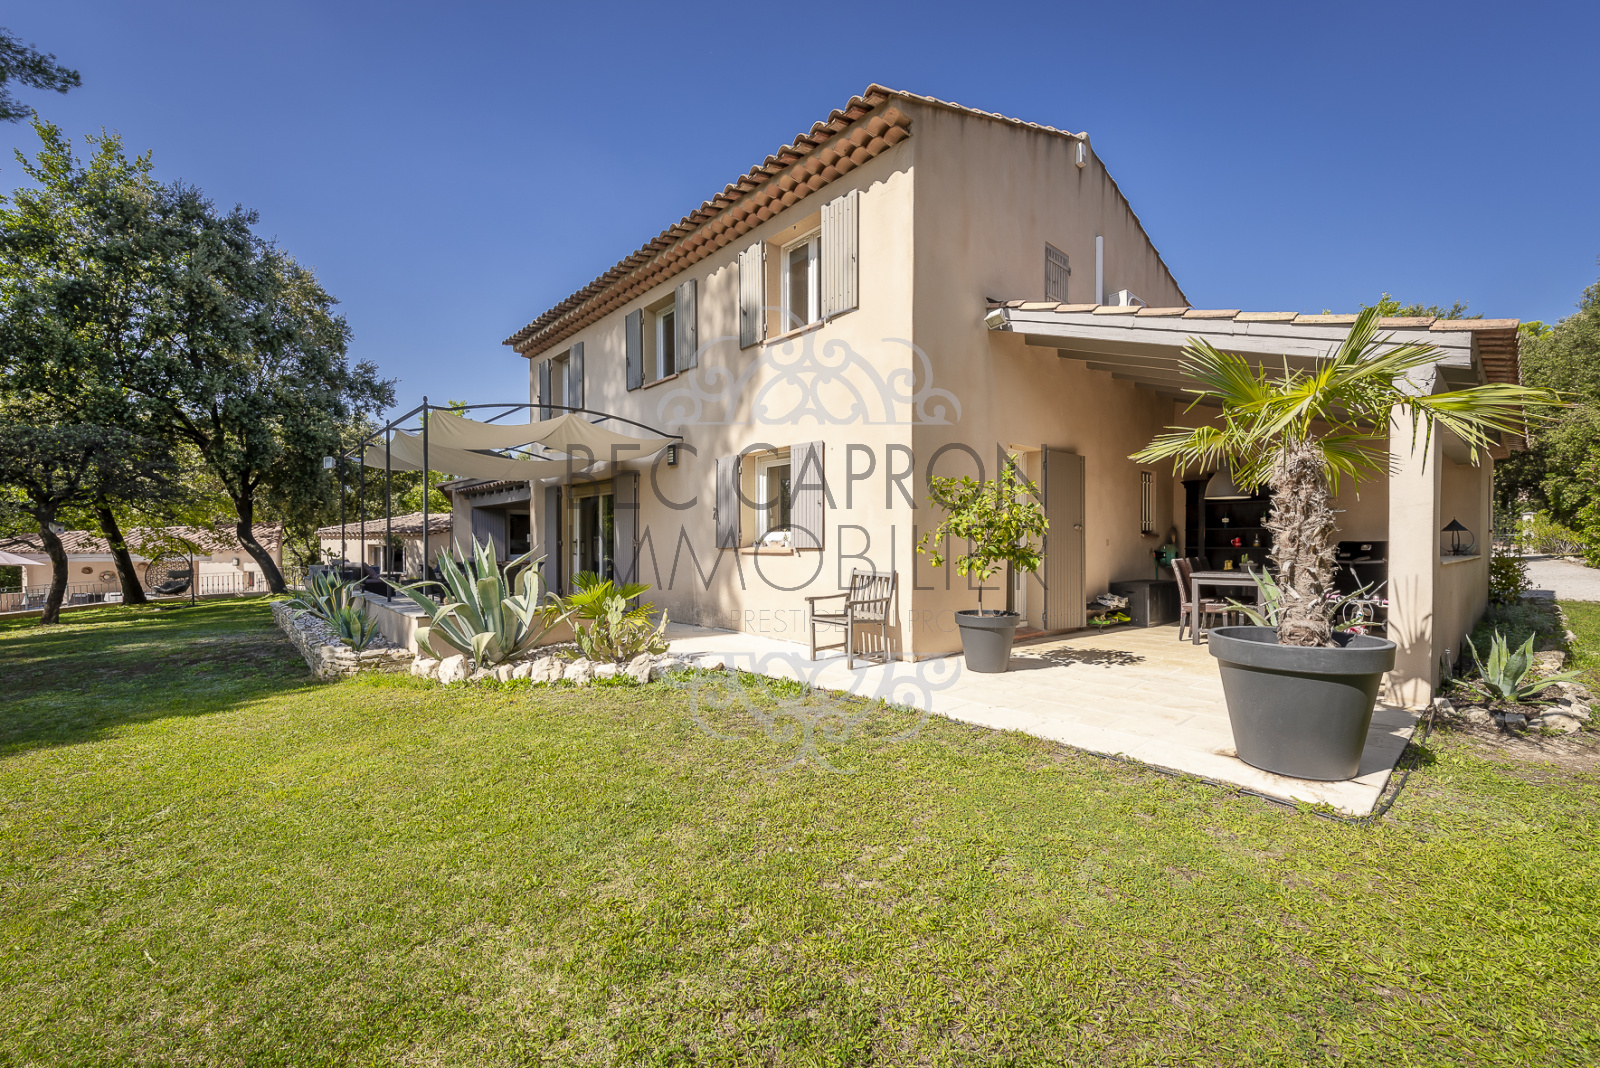 Image_12, Maisons (maison, propriété, villa, Mas,bastide, maison de village), Aix-en-Provence, ref :979VM